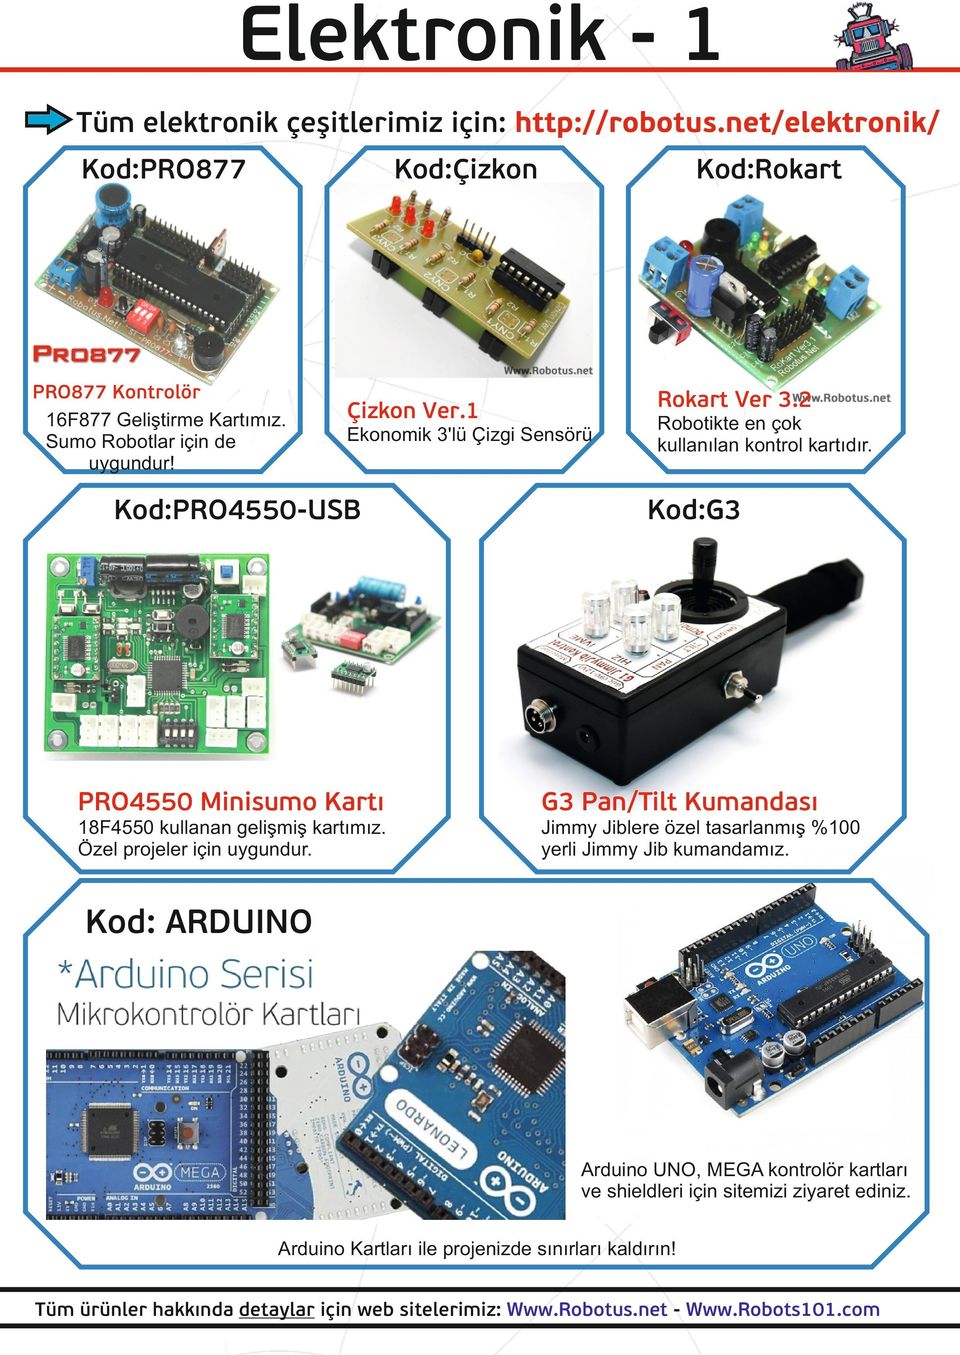 1 Ekonomik 3'lü Çizgi Sensörü Kod:PRO4550-USB Robotikte en çok kullanılan kontrol kartıdır.